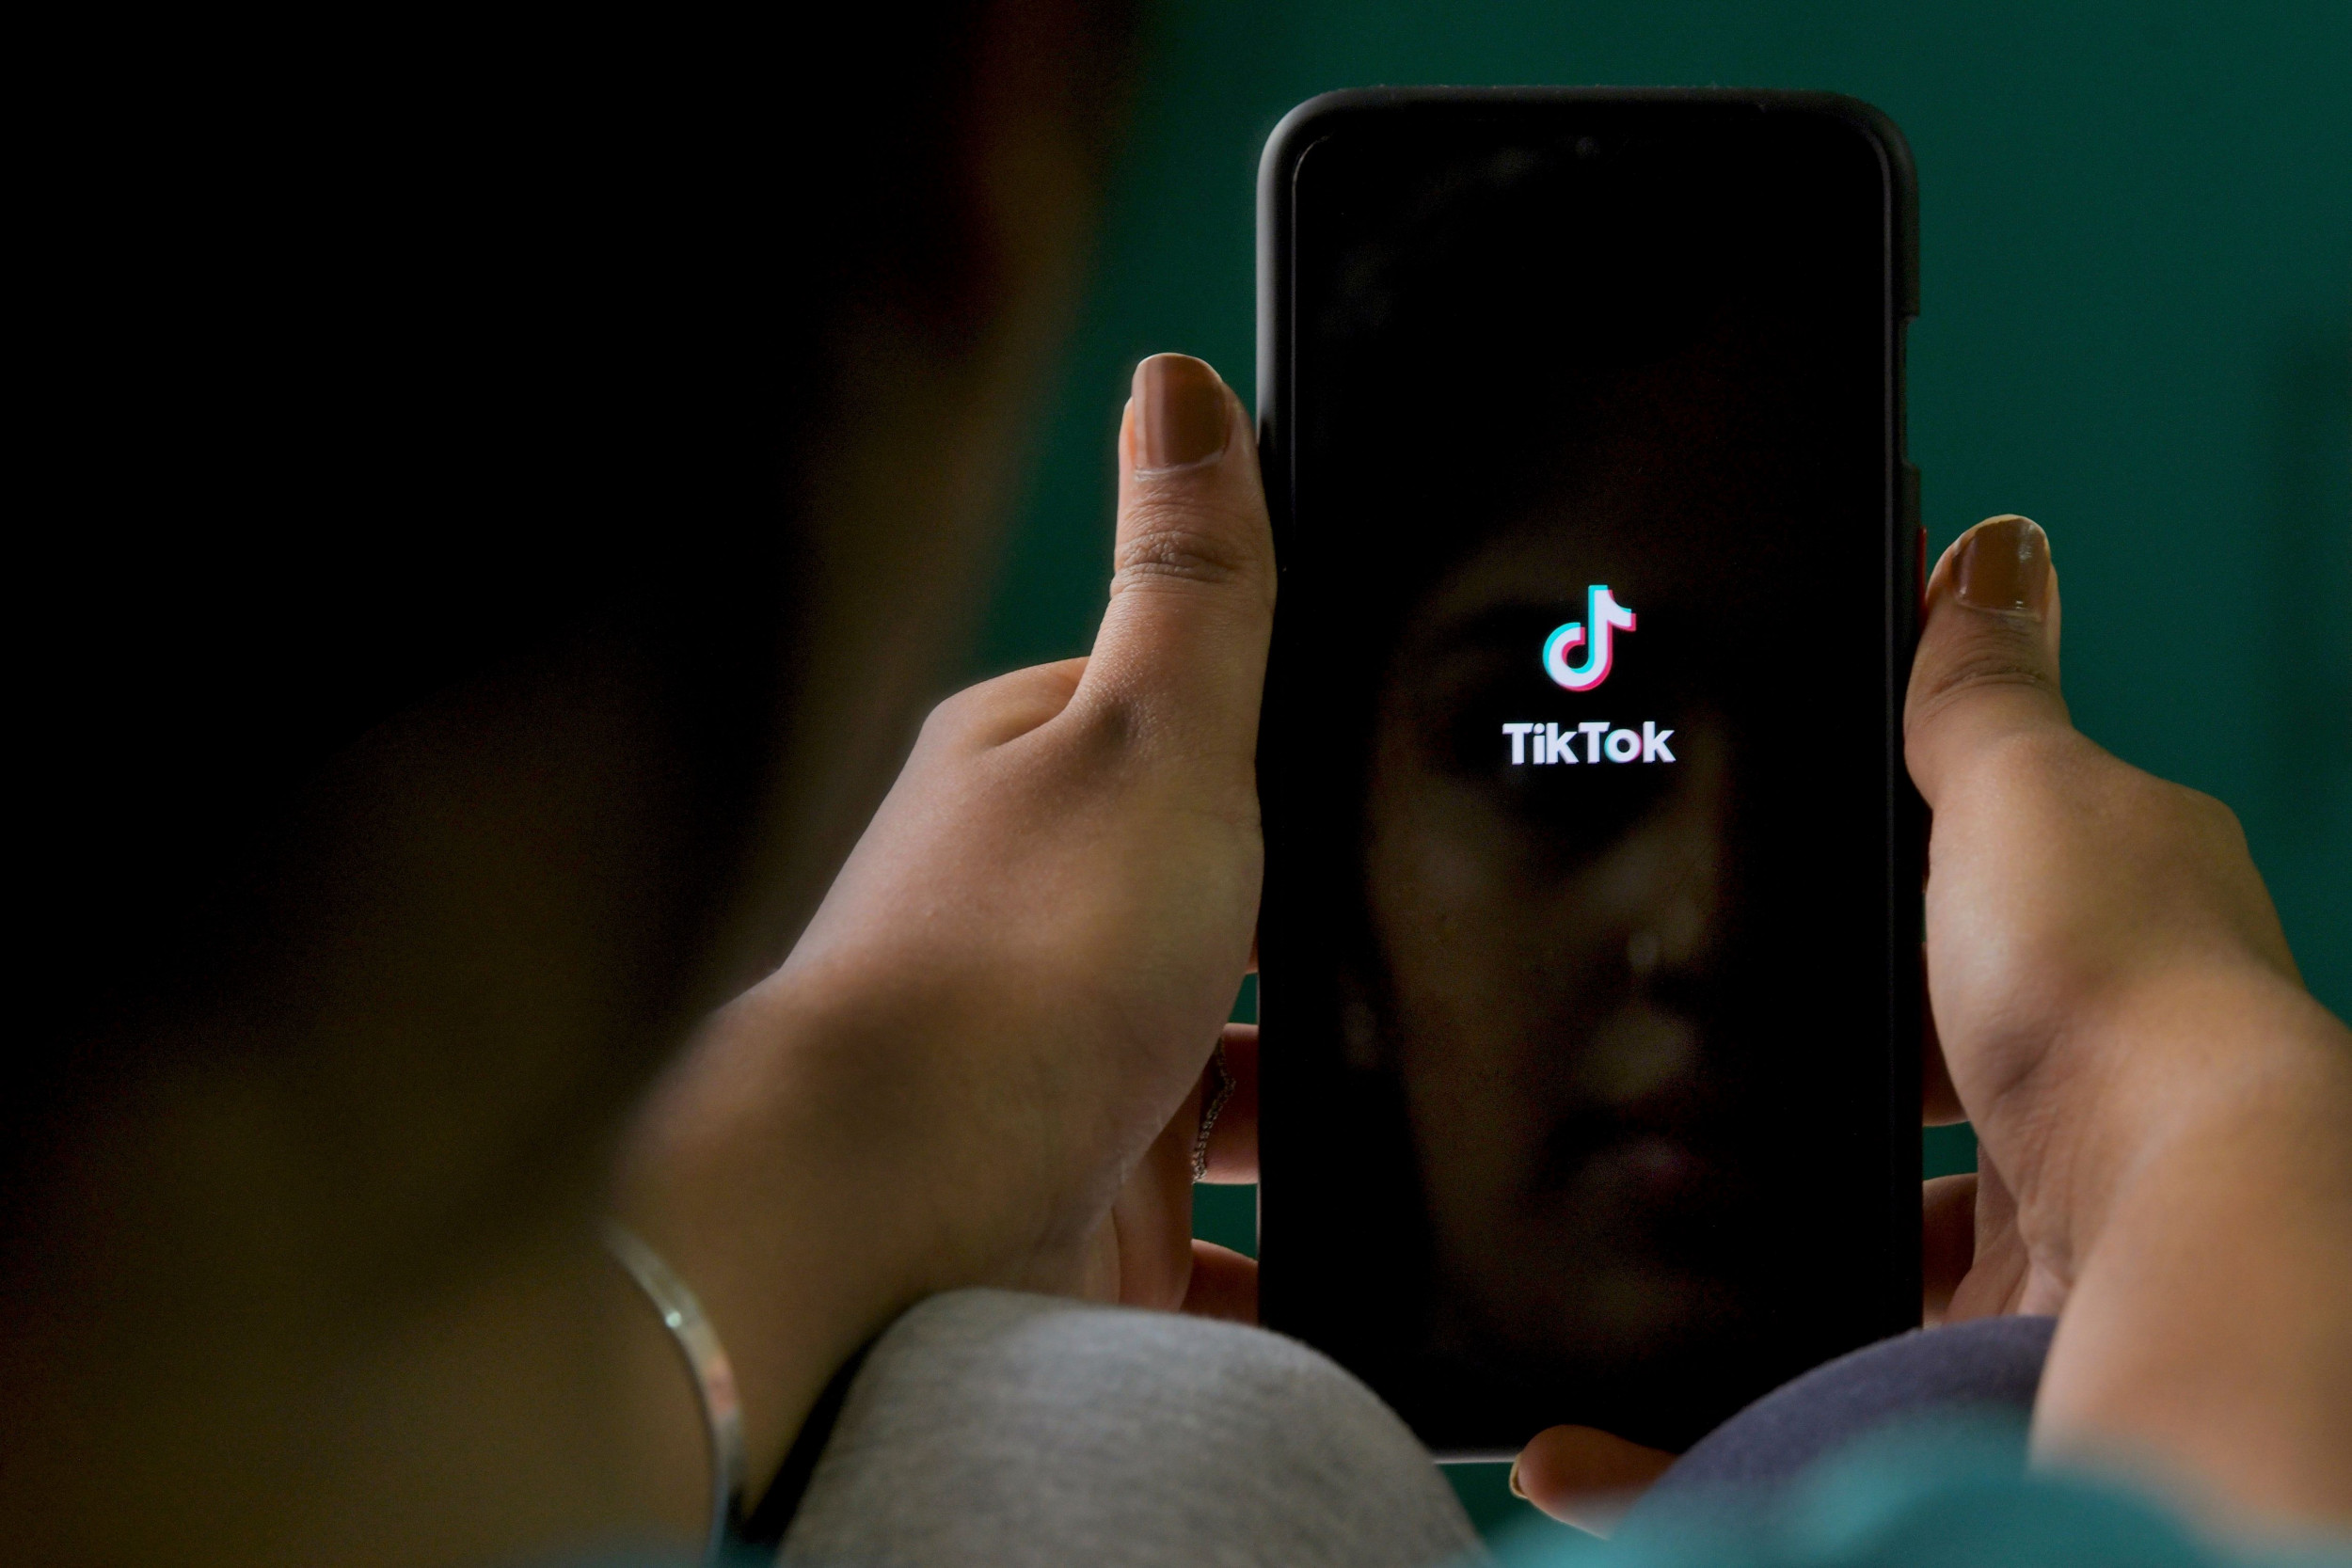 Dy vajzat e reja humbën jetën nga sfida në TikTok, familjarët padisin kompaninë: Investojnë në përmbajtje të rrezikshme